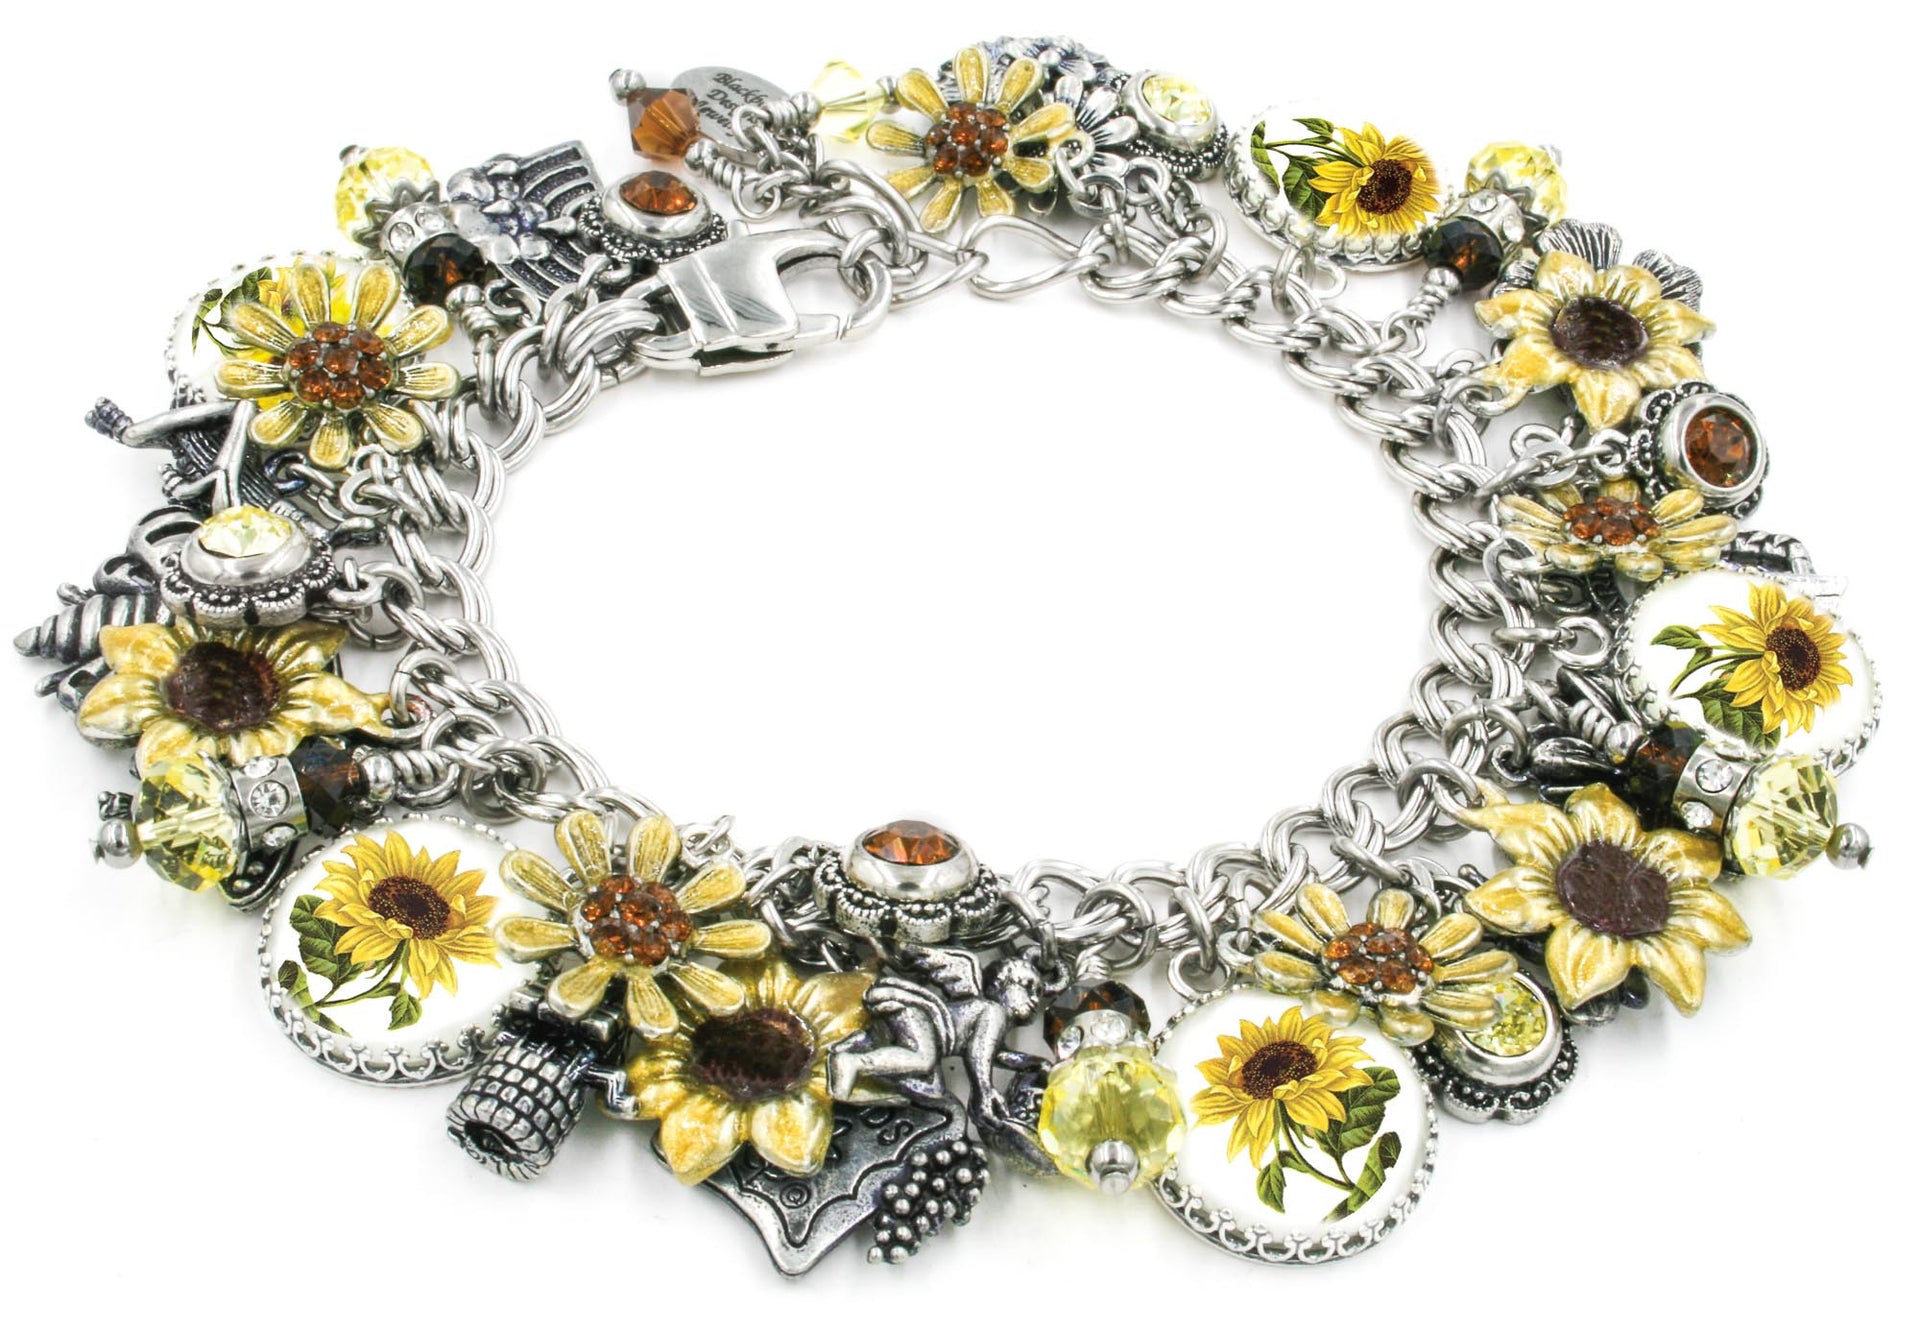 wide view of sunflower jewelry - charm bracelet